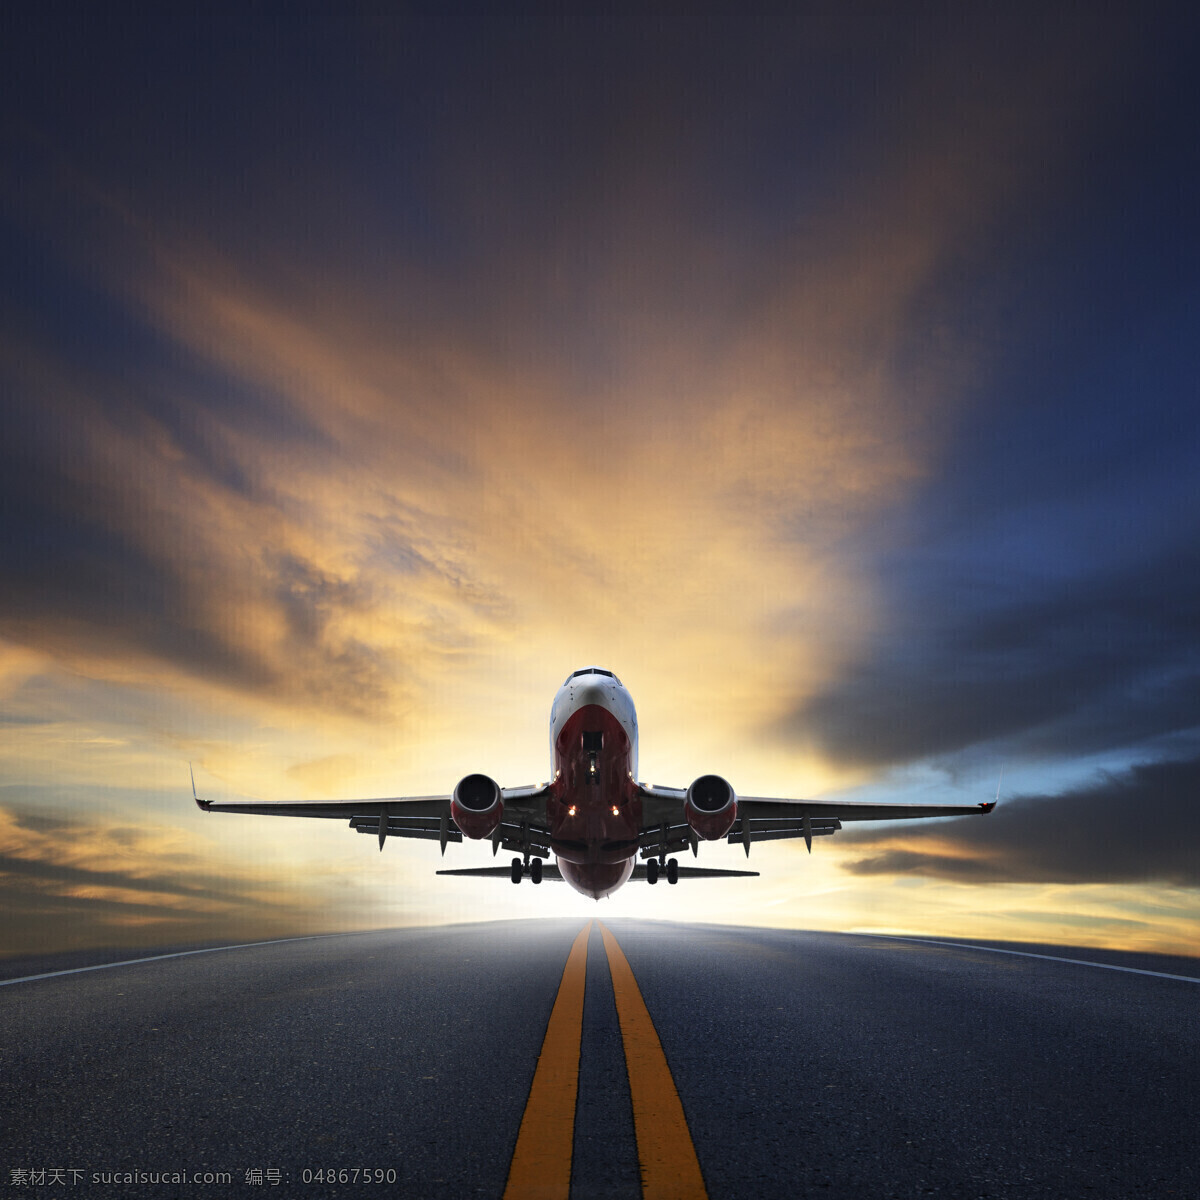 起飞 飞机 起飞的飞机 客机 航天飞机 航空飞机 交通工具 机场 飞机图片 现代科技